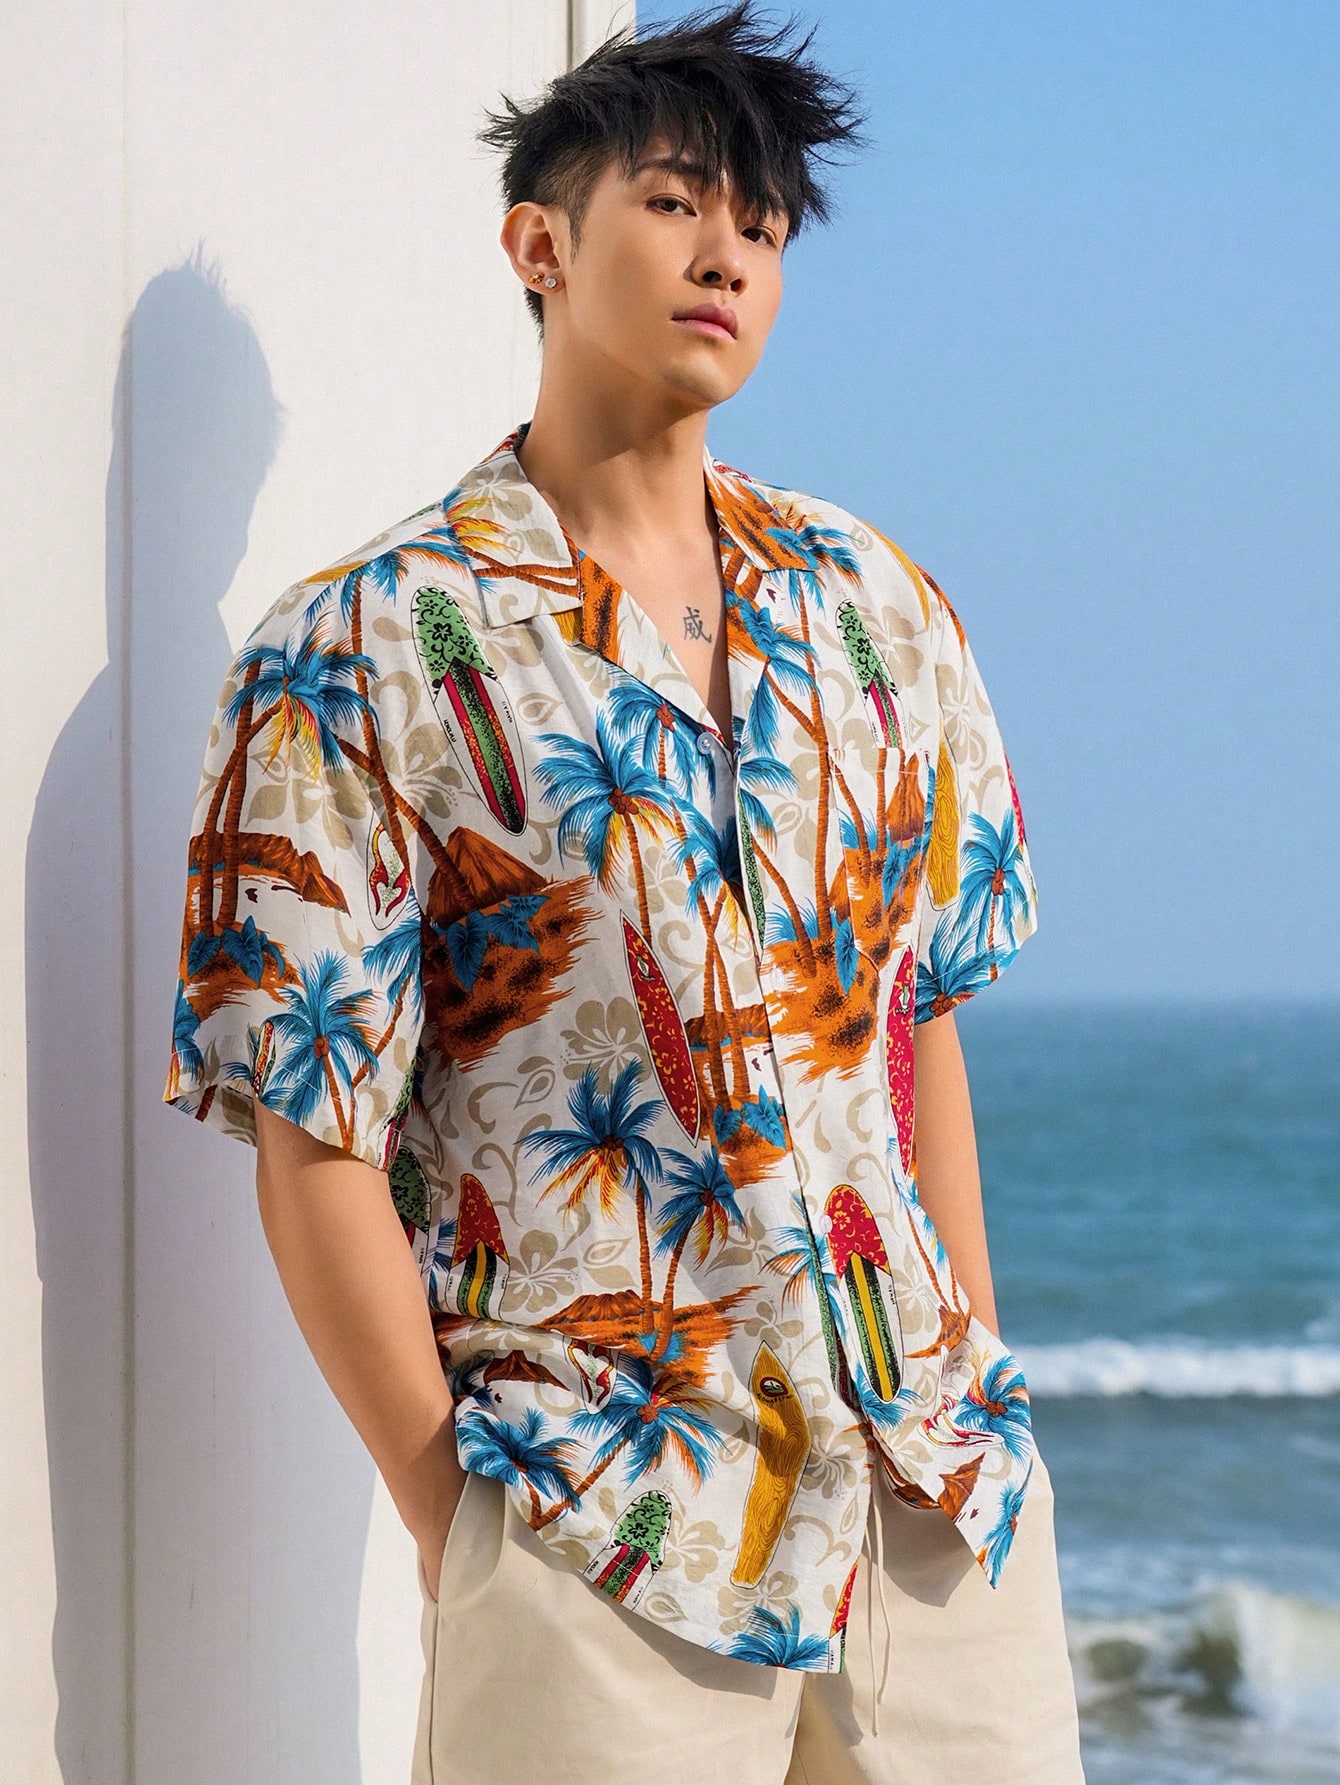 DAZY Мужская летняя пляжная гавайская рубашка с принтом пальм, многоцветный